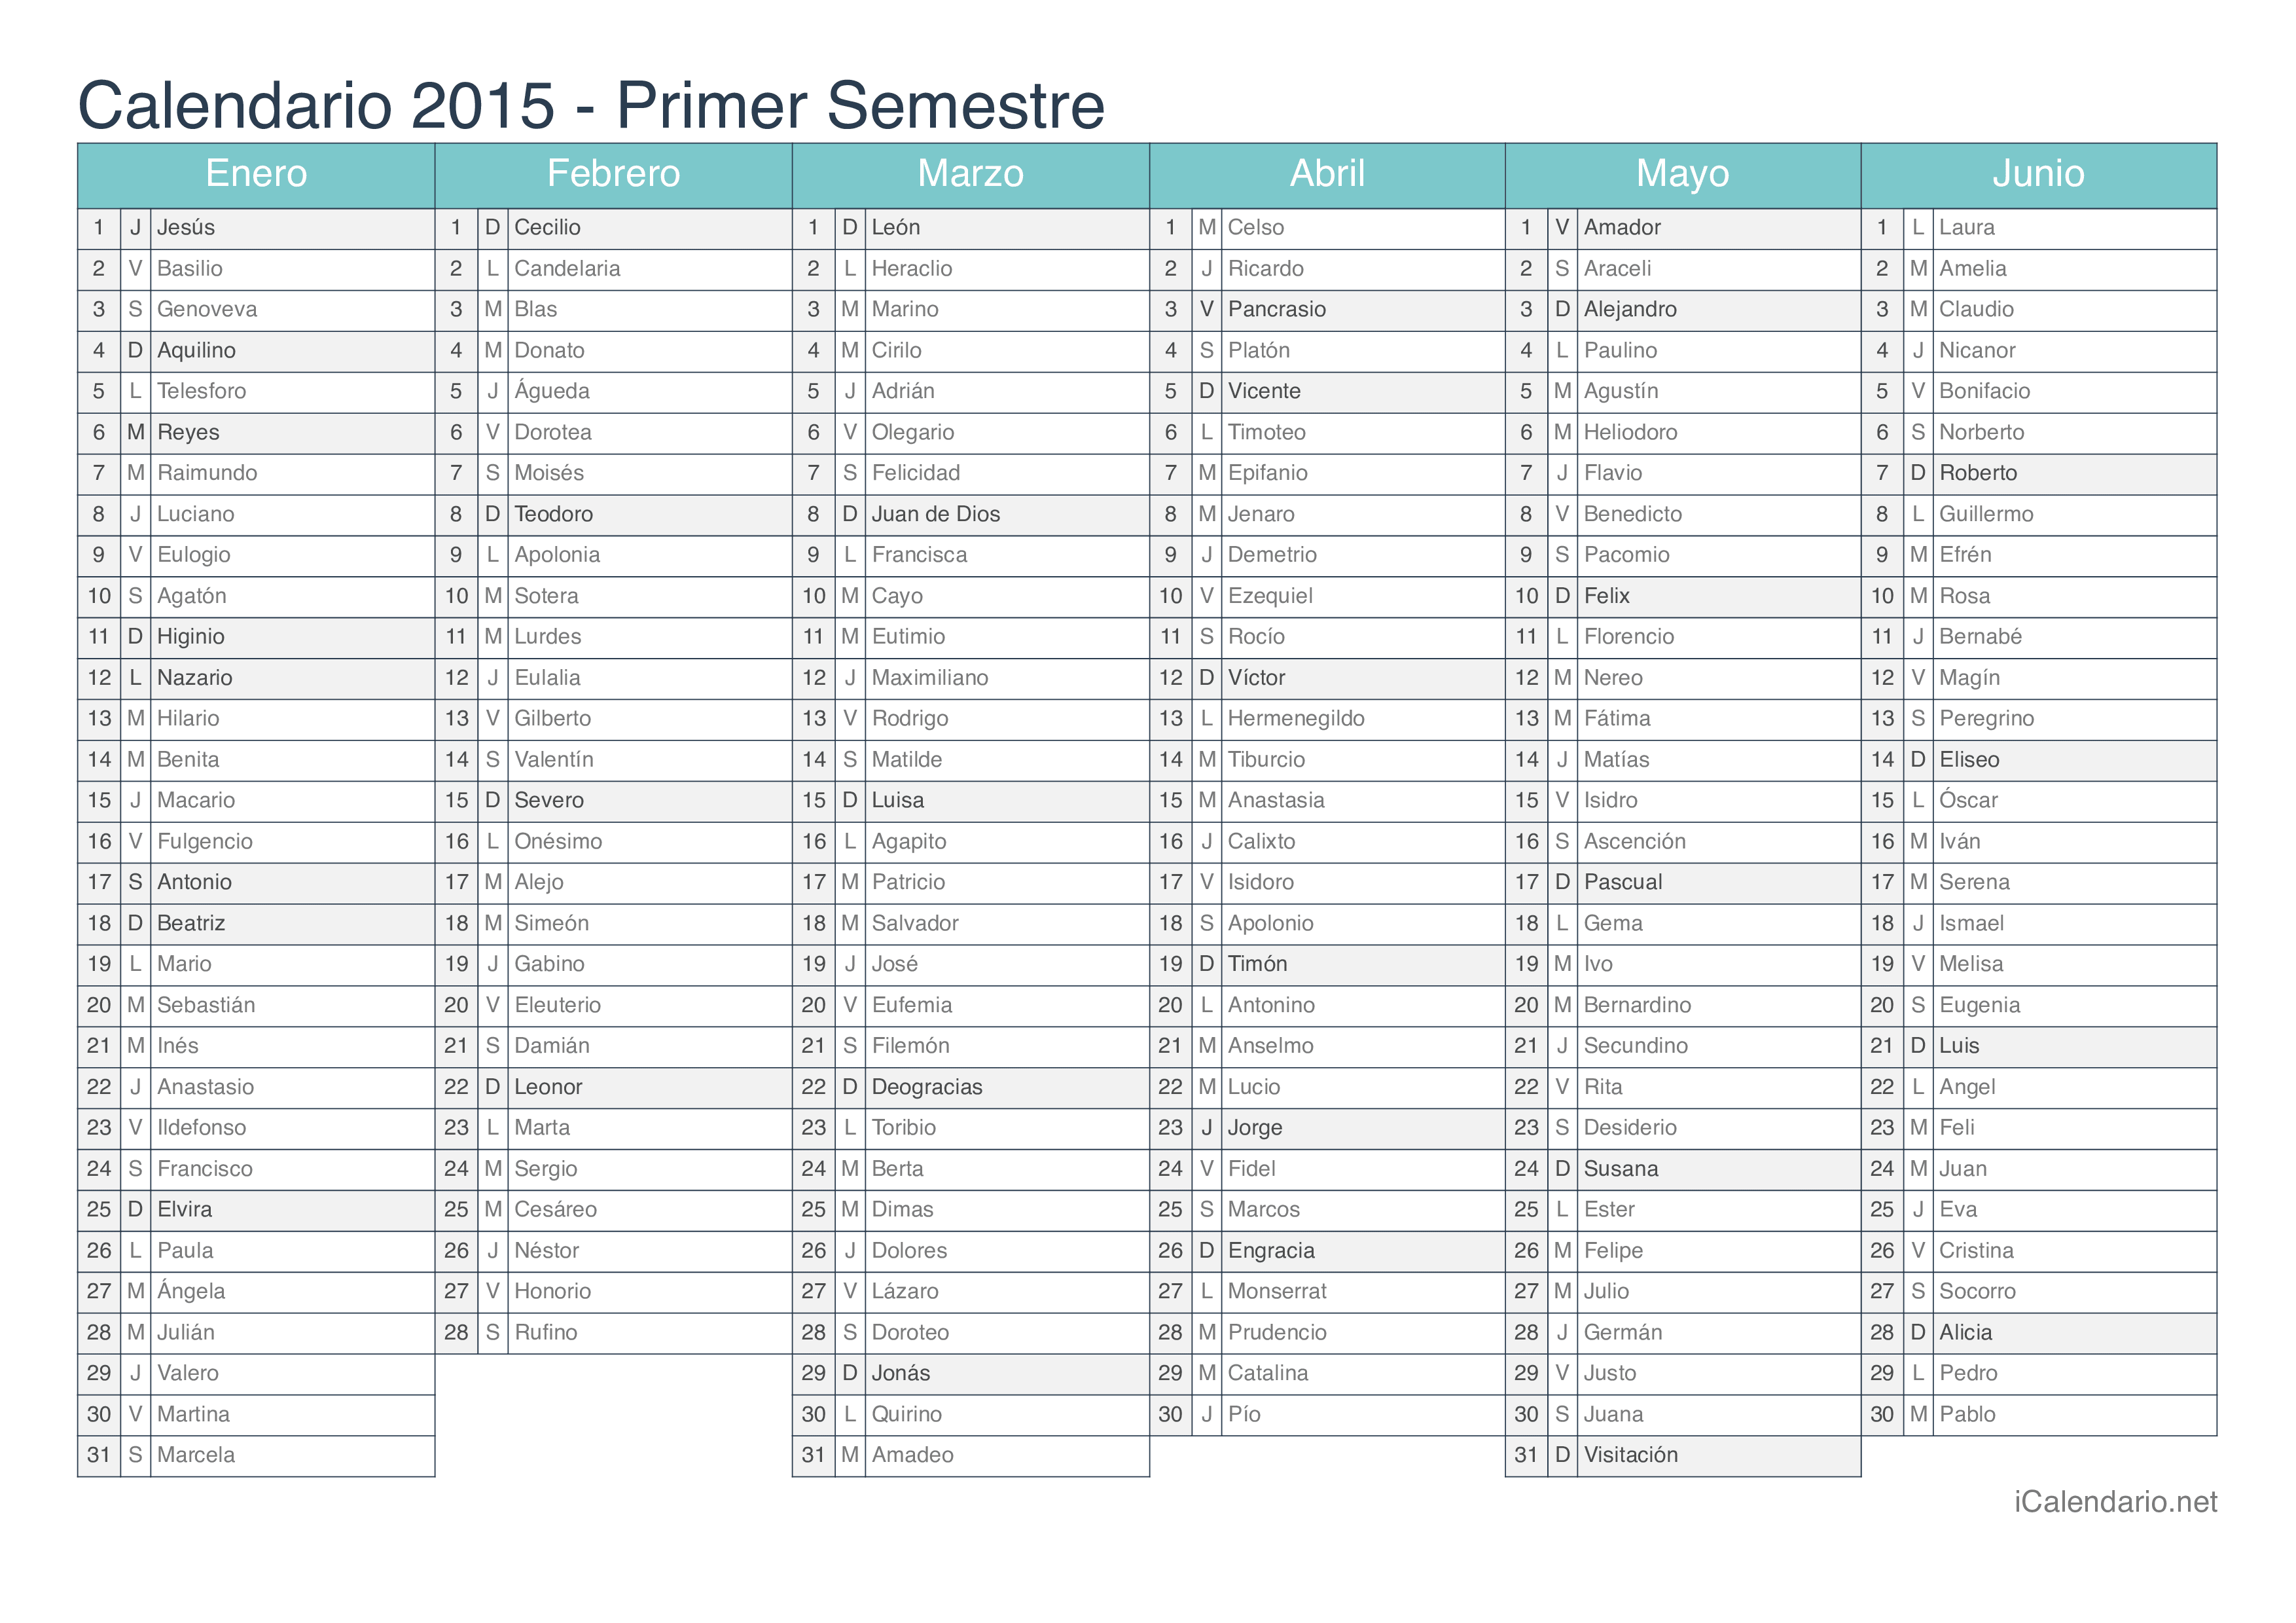 Calendario por semestre 2015 com festa do dia - Turquesa